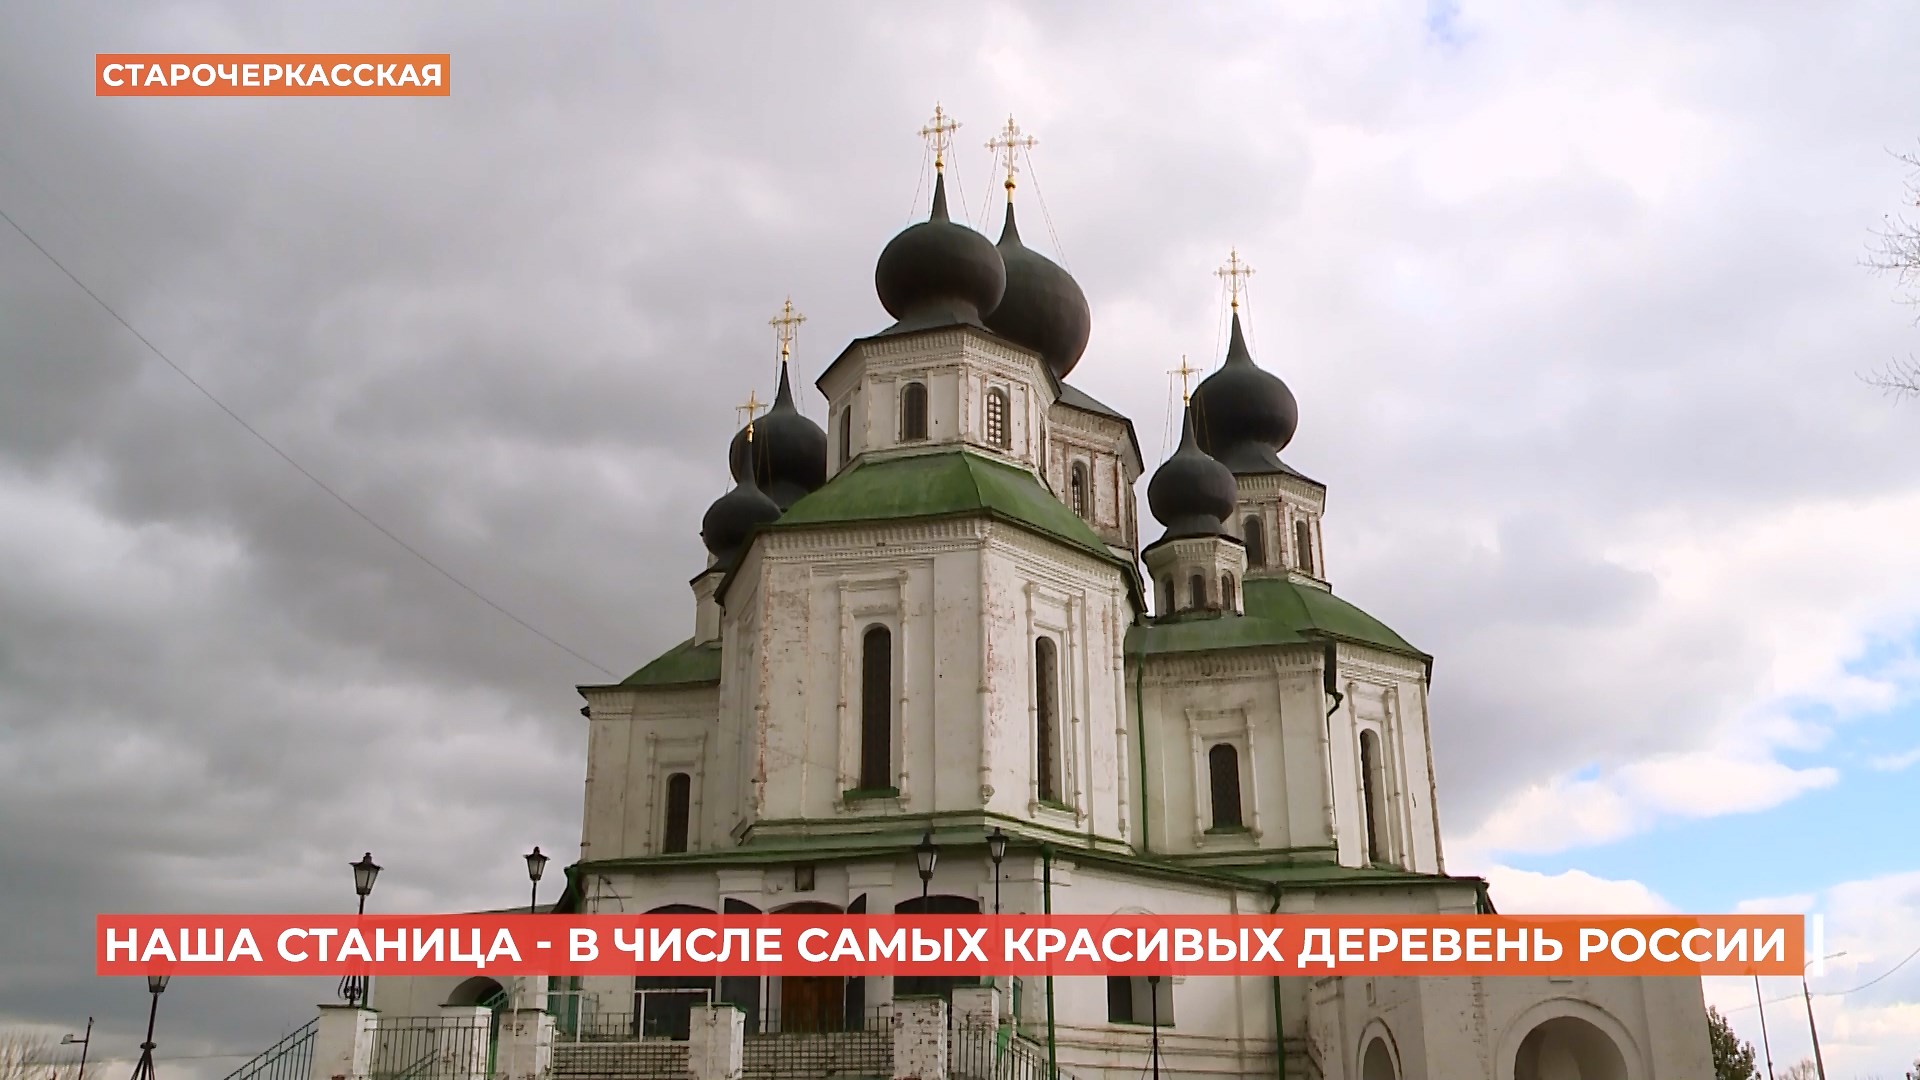 Сразу два донских поселения получили статус самых красивых деревень России